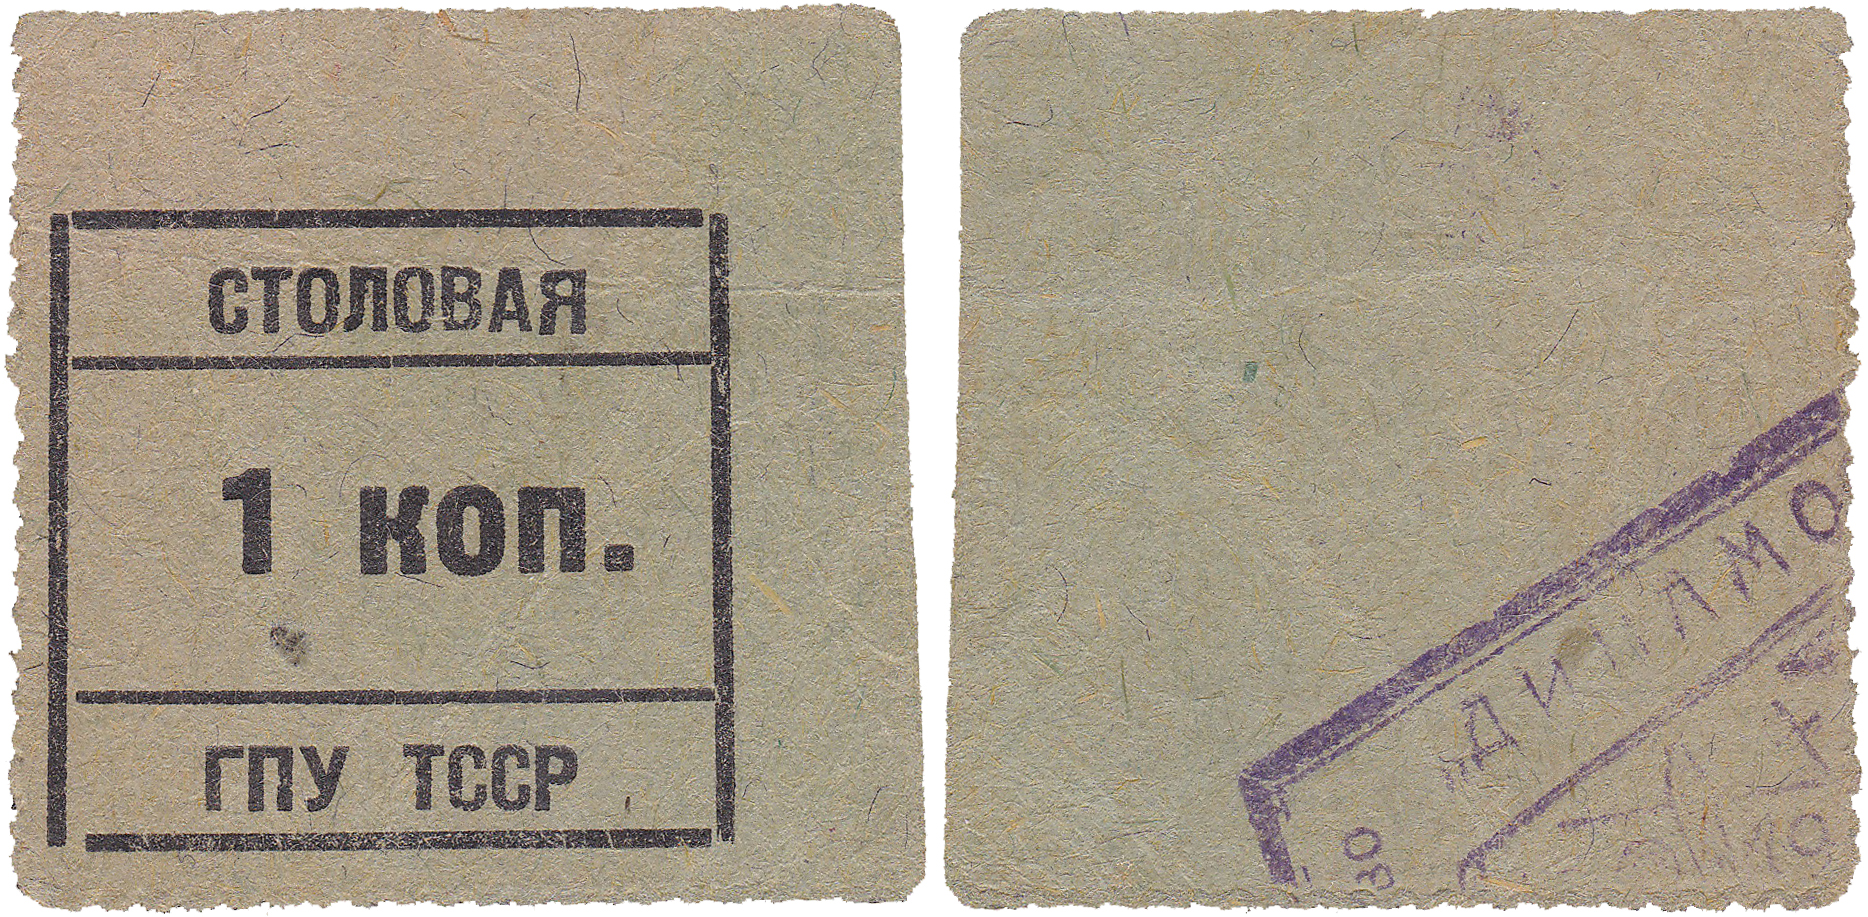 1 Копейка 1924 год. Столовая ГПУ ТССР, Туркменская СССР, Полторацк (Ашхабад)